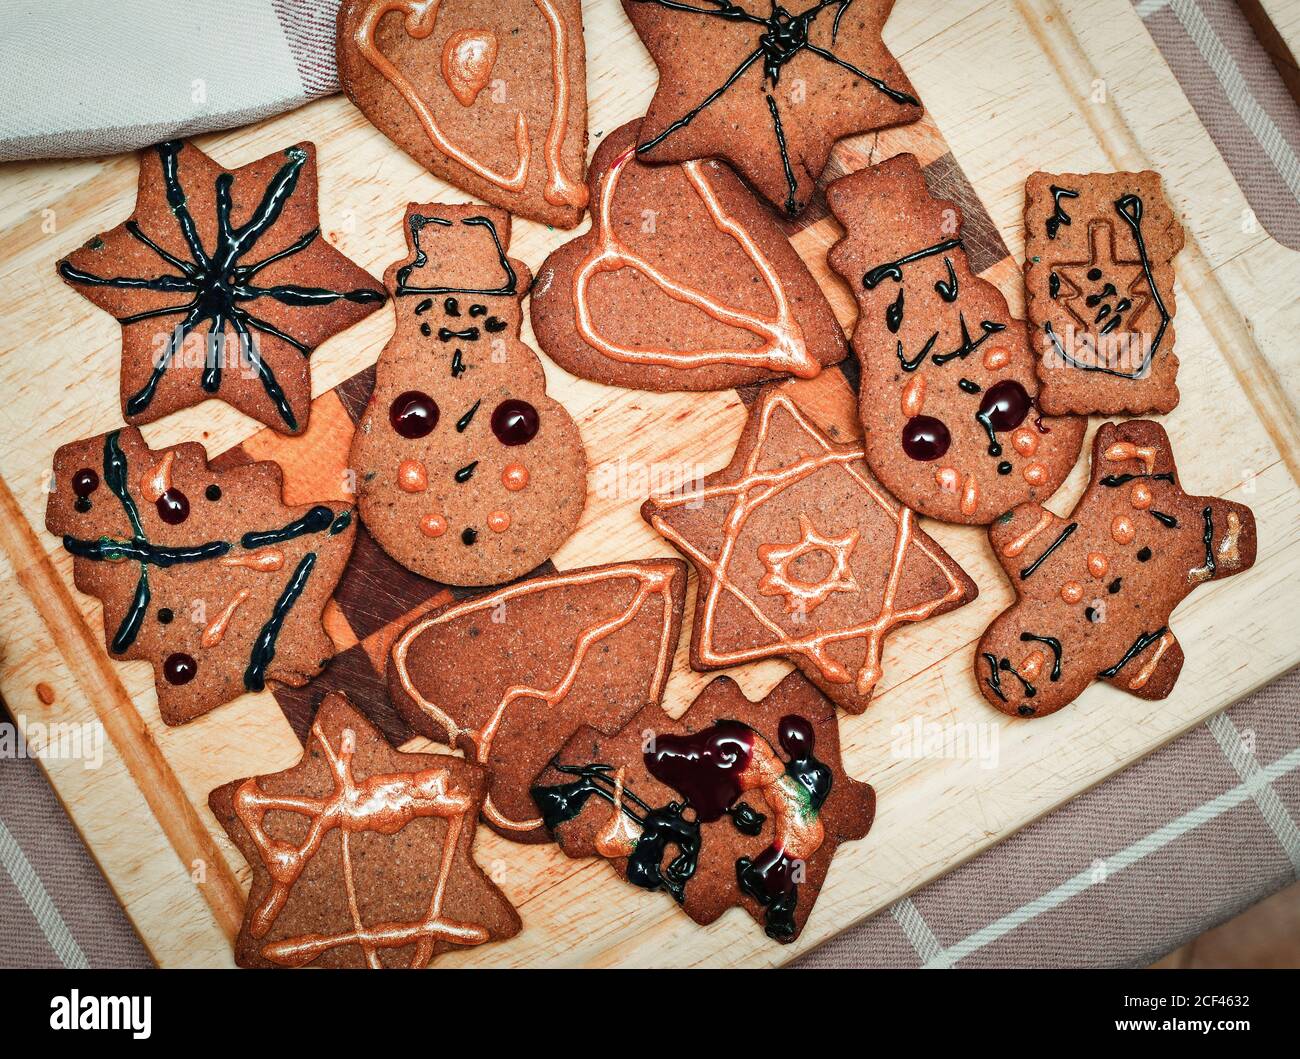 Los niños han decorado a mano galletas de jengibre de Navidad figurines en el tablero de la cocina Foto de stock